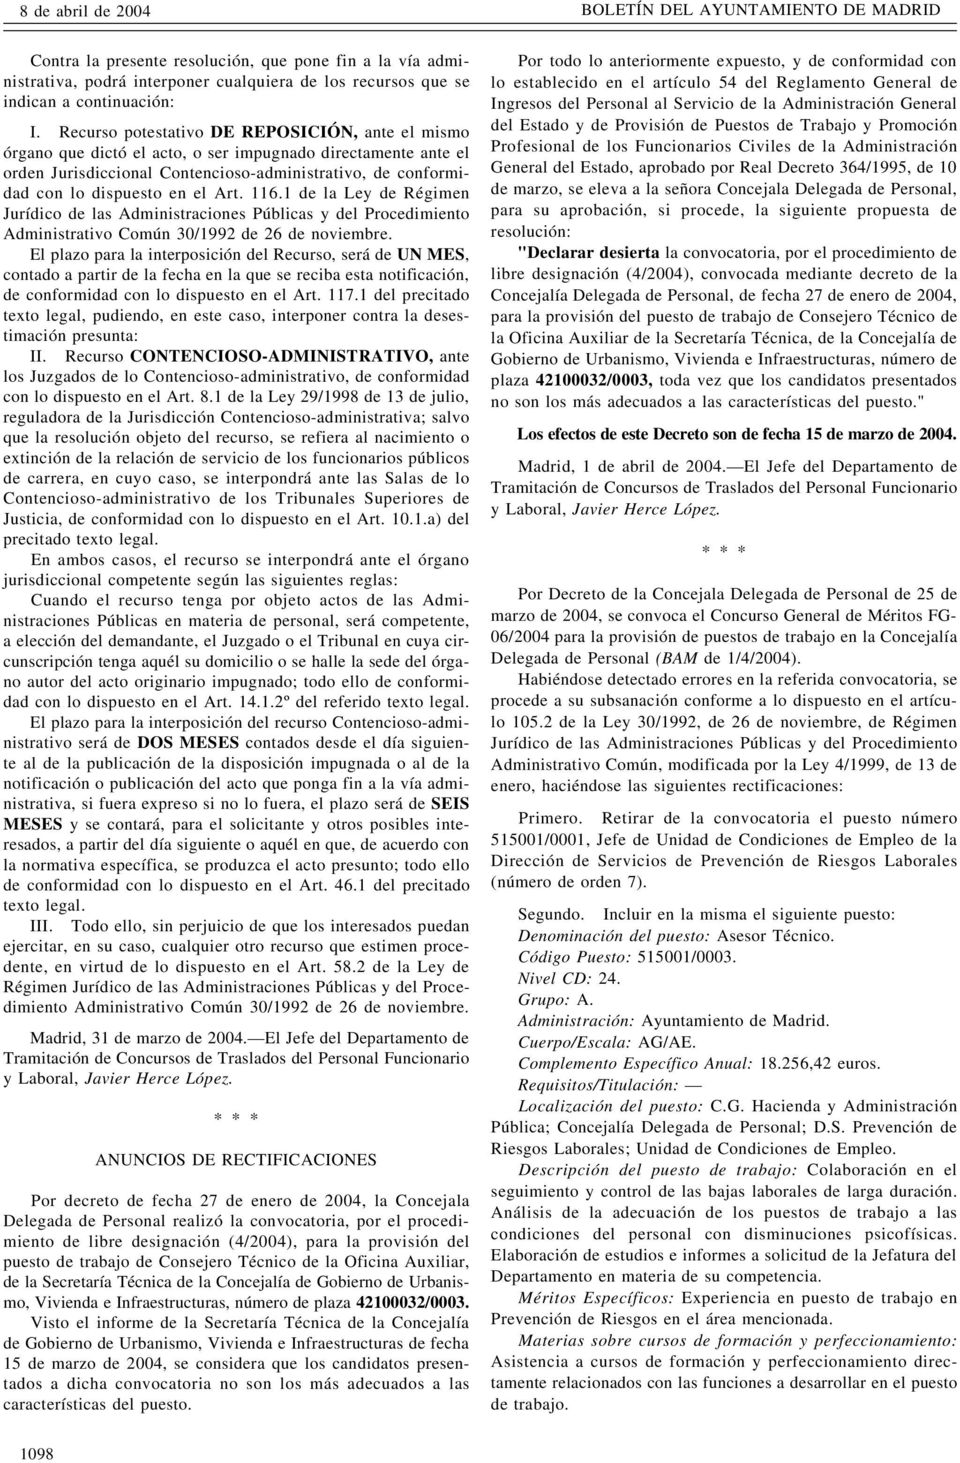 Art. 116.1 de la Ley de Régimen Jurídico de las Administraciones Públicas y del Procedimiento Administrativo Común 30/1992 de 26 de noviembre.